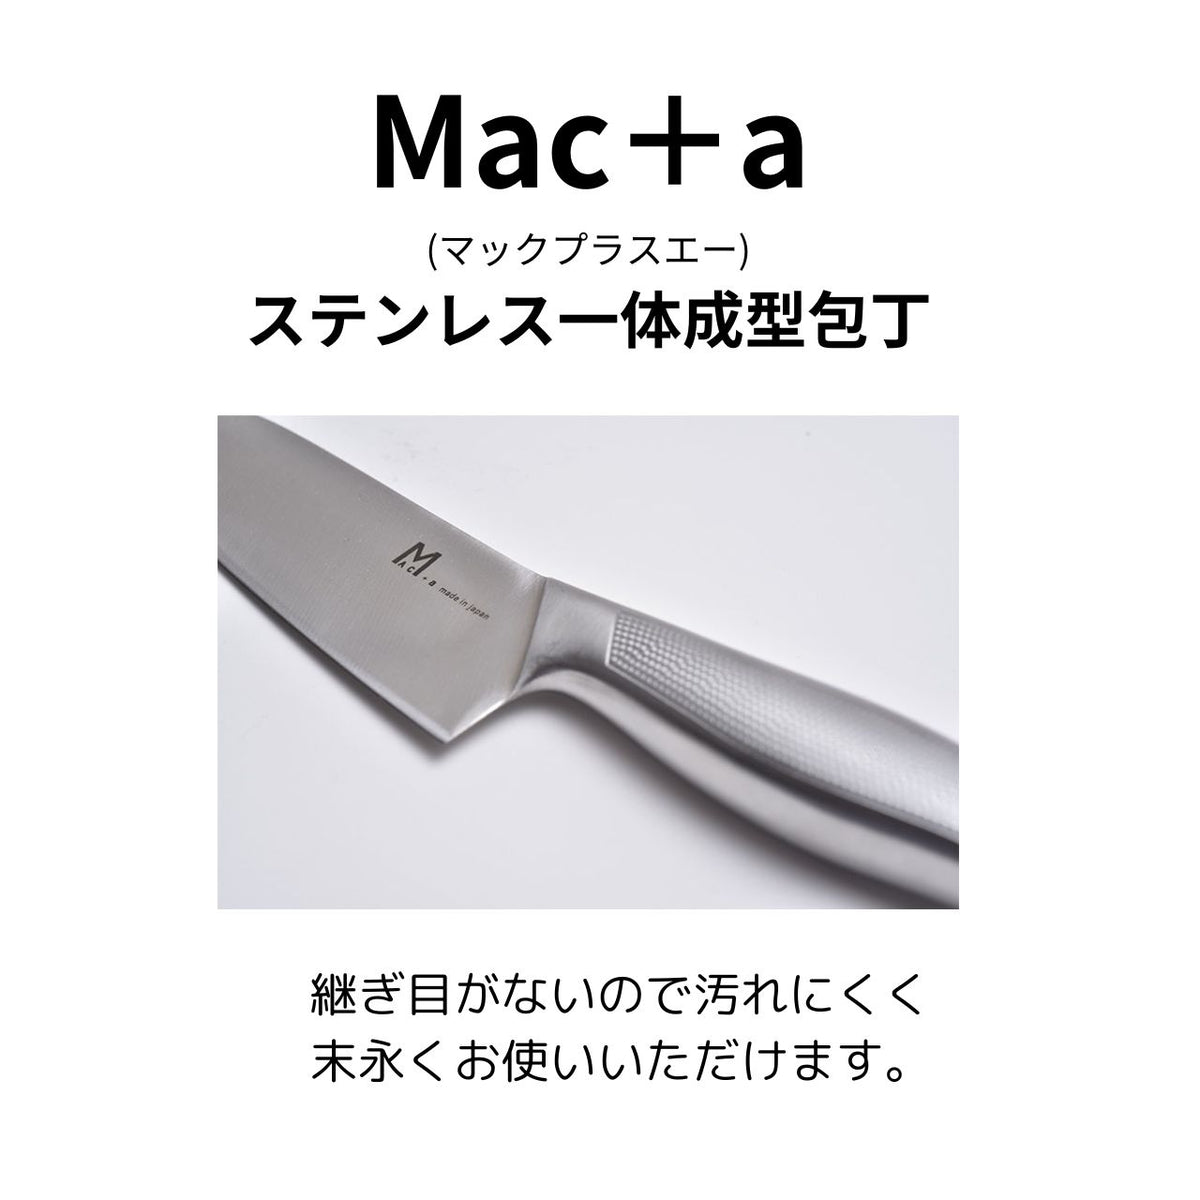 MAC+a】ペティーナイフ MA-125 – 鍋・フライパン・キッチン用品と雑貨